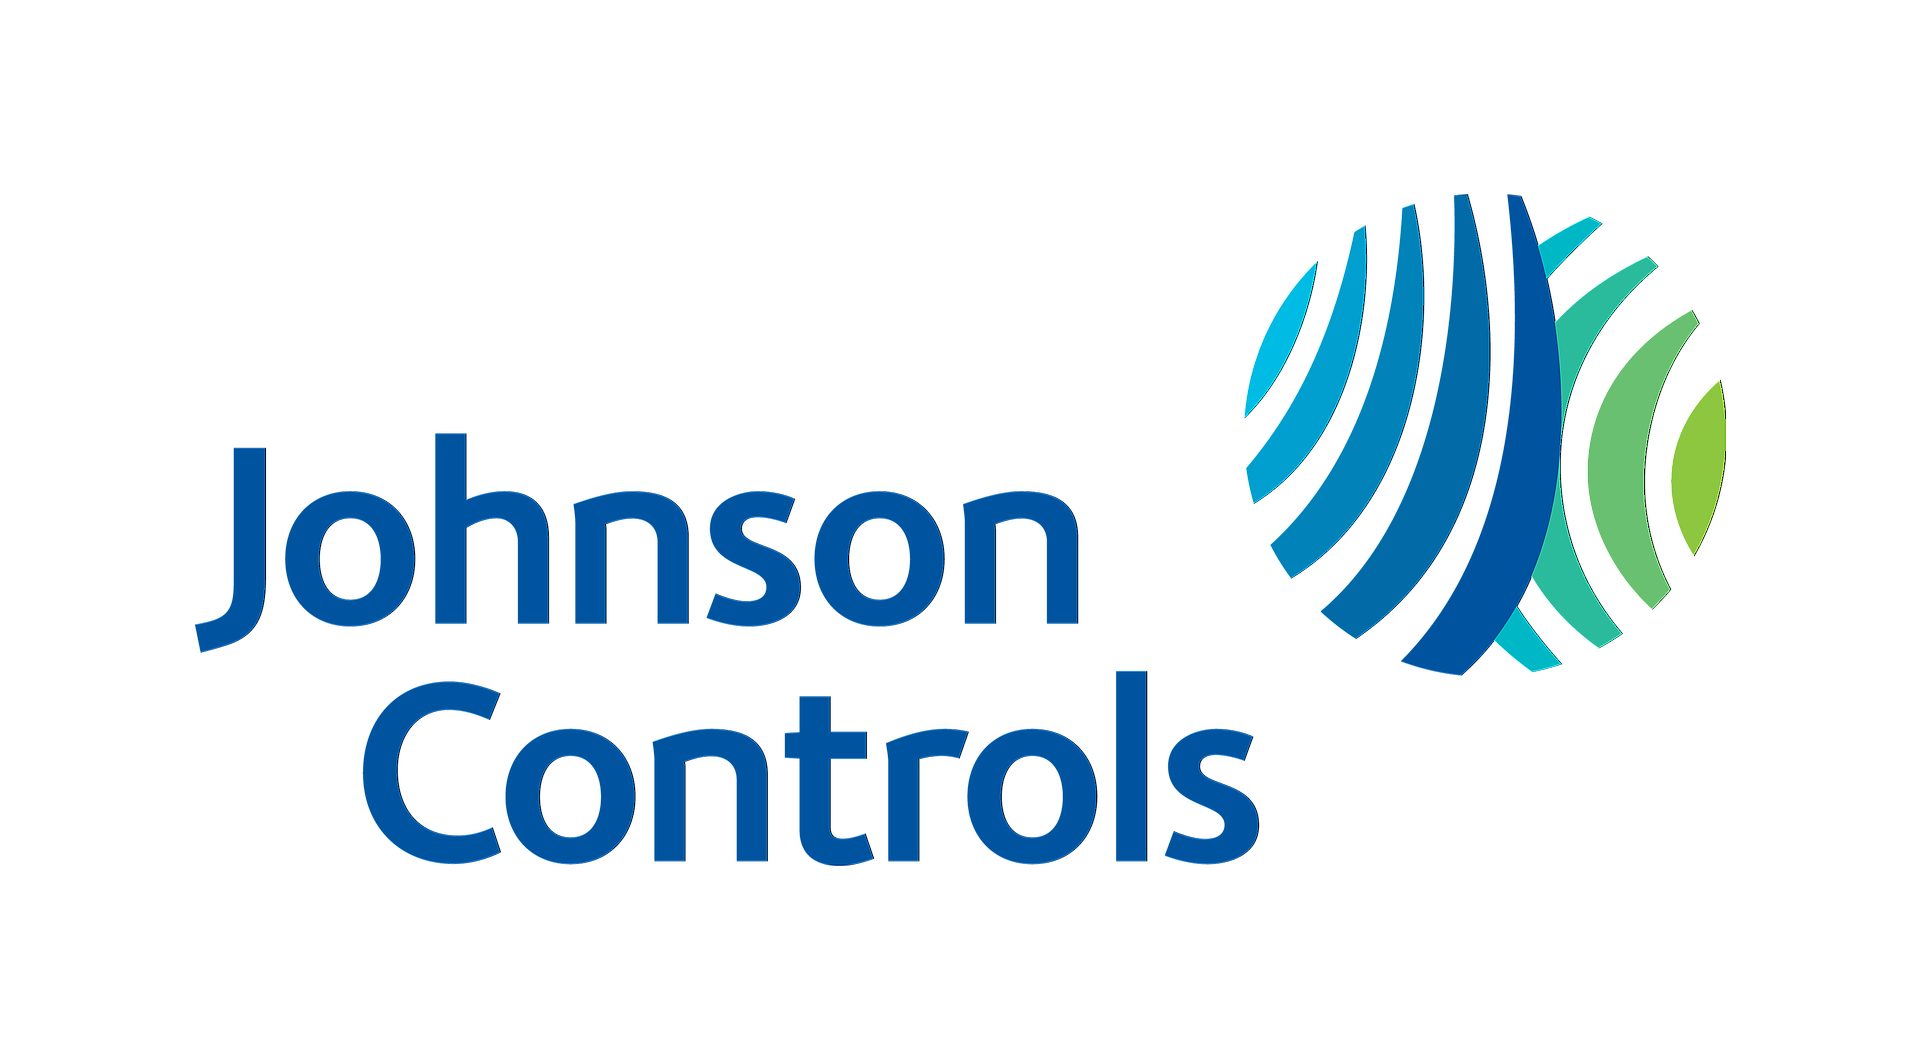 Lees meer over de ransomware-aanval van Johnson Controls, een cybercrisis met een vraag van $ 51 miljoen, zorgen van het DHS en aanhoudende gevolgen